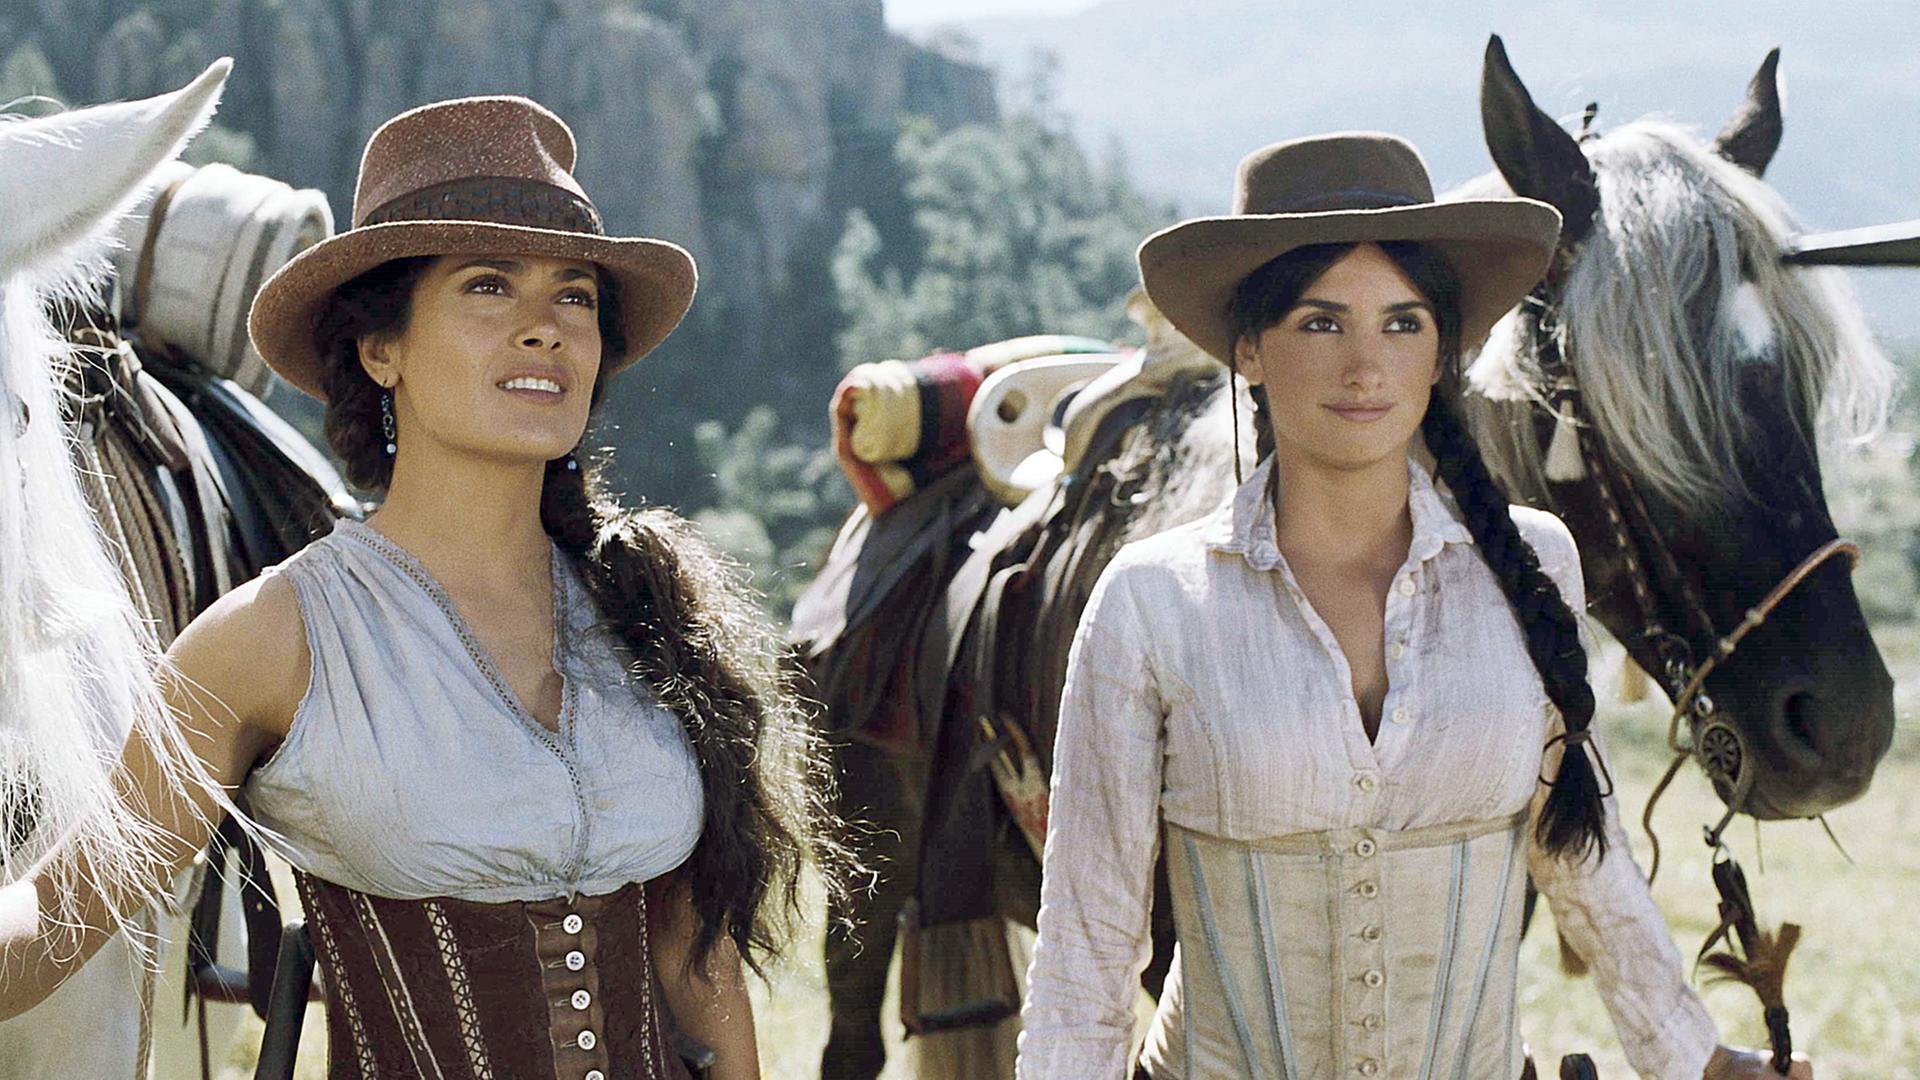 Sara (Salma Hayek, l.) und Maria (Penelope Cruz) halten im Kinofilm "Bandidas" ihre Pferde (undatiertes Szenenfoto).